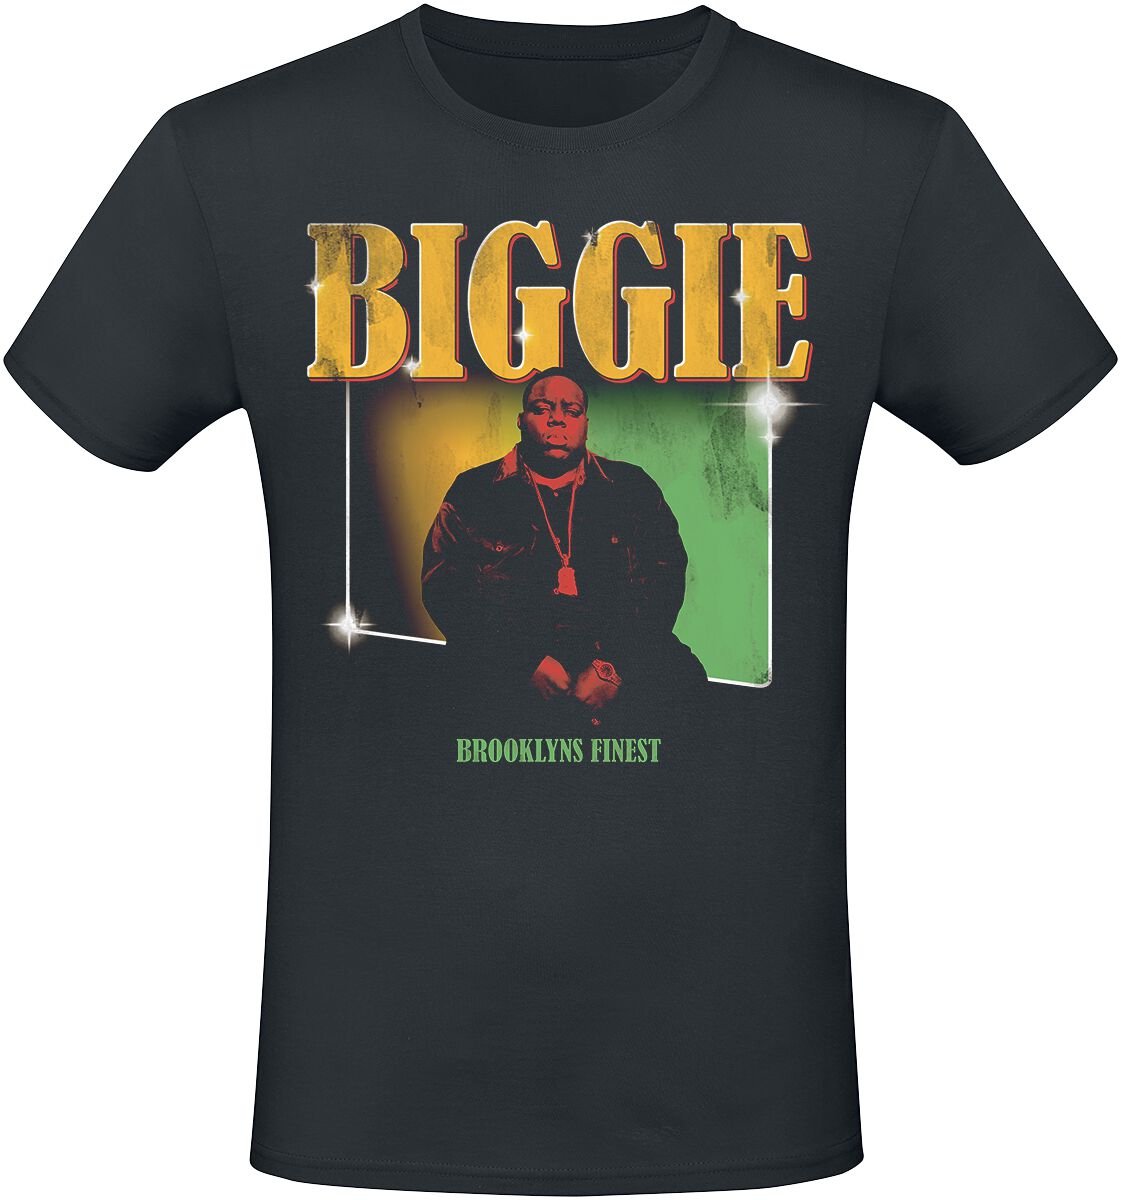 Notorious B.I.G. T-Shirt - Finest - S bis XXL - für Männer - Größe L - schwarz  - Lizenziertes Merchandise!